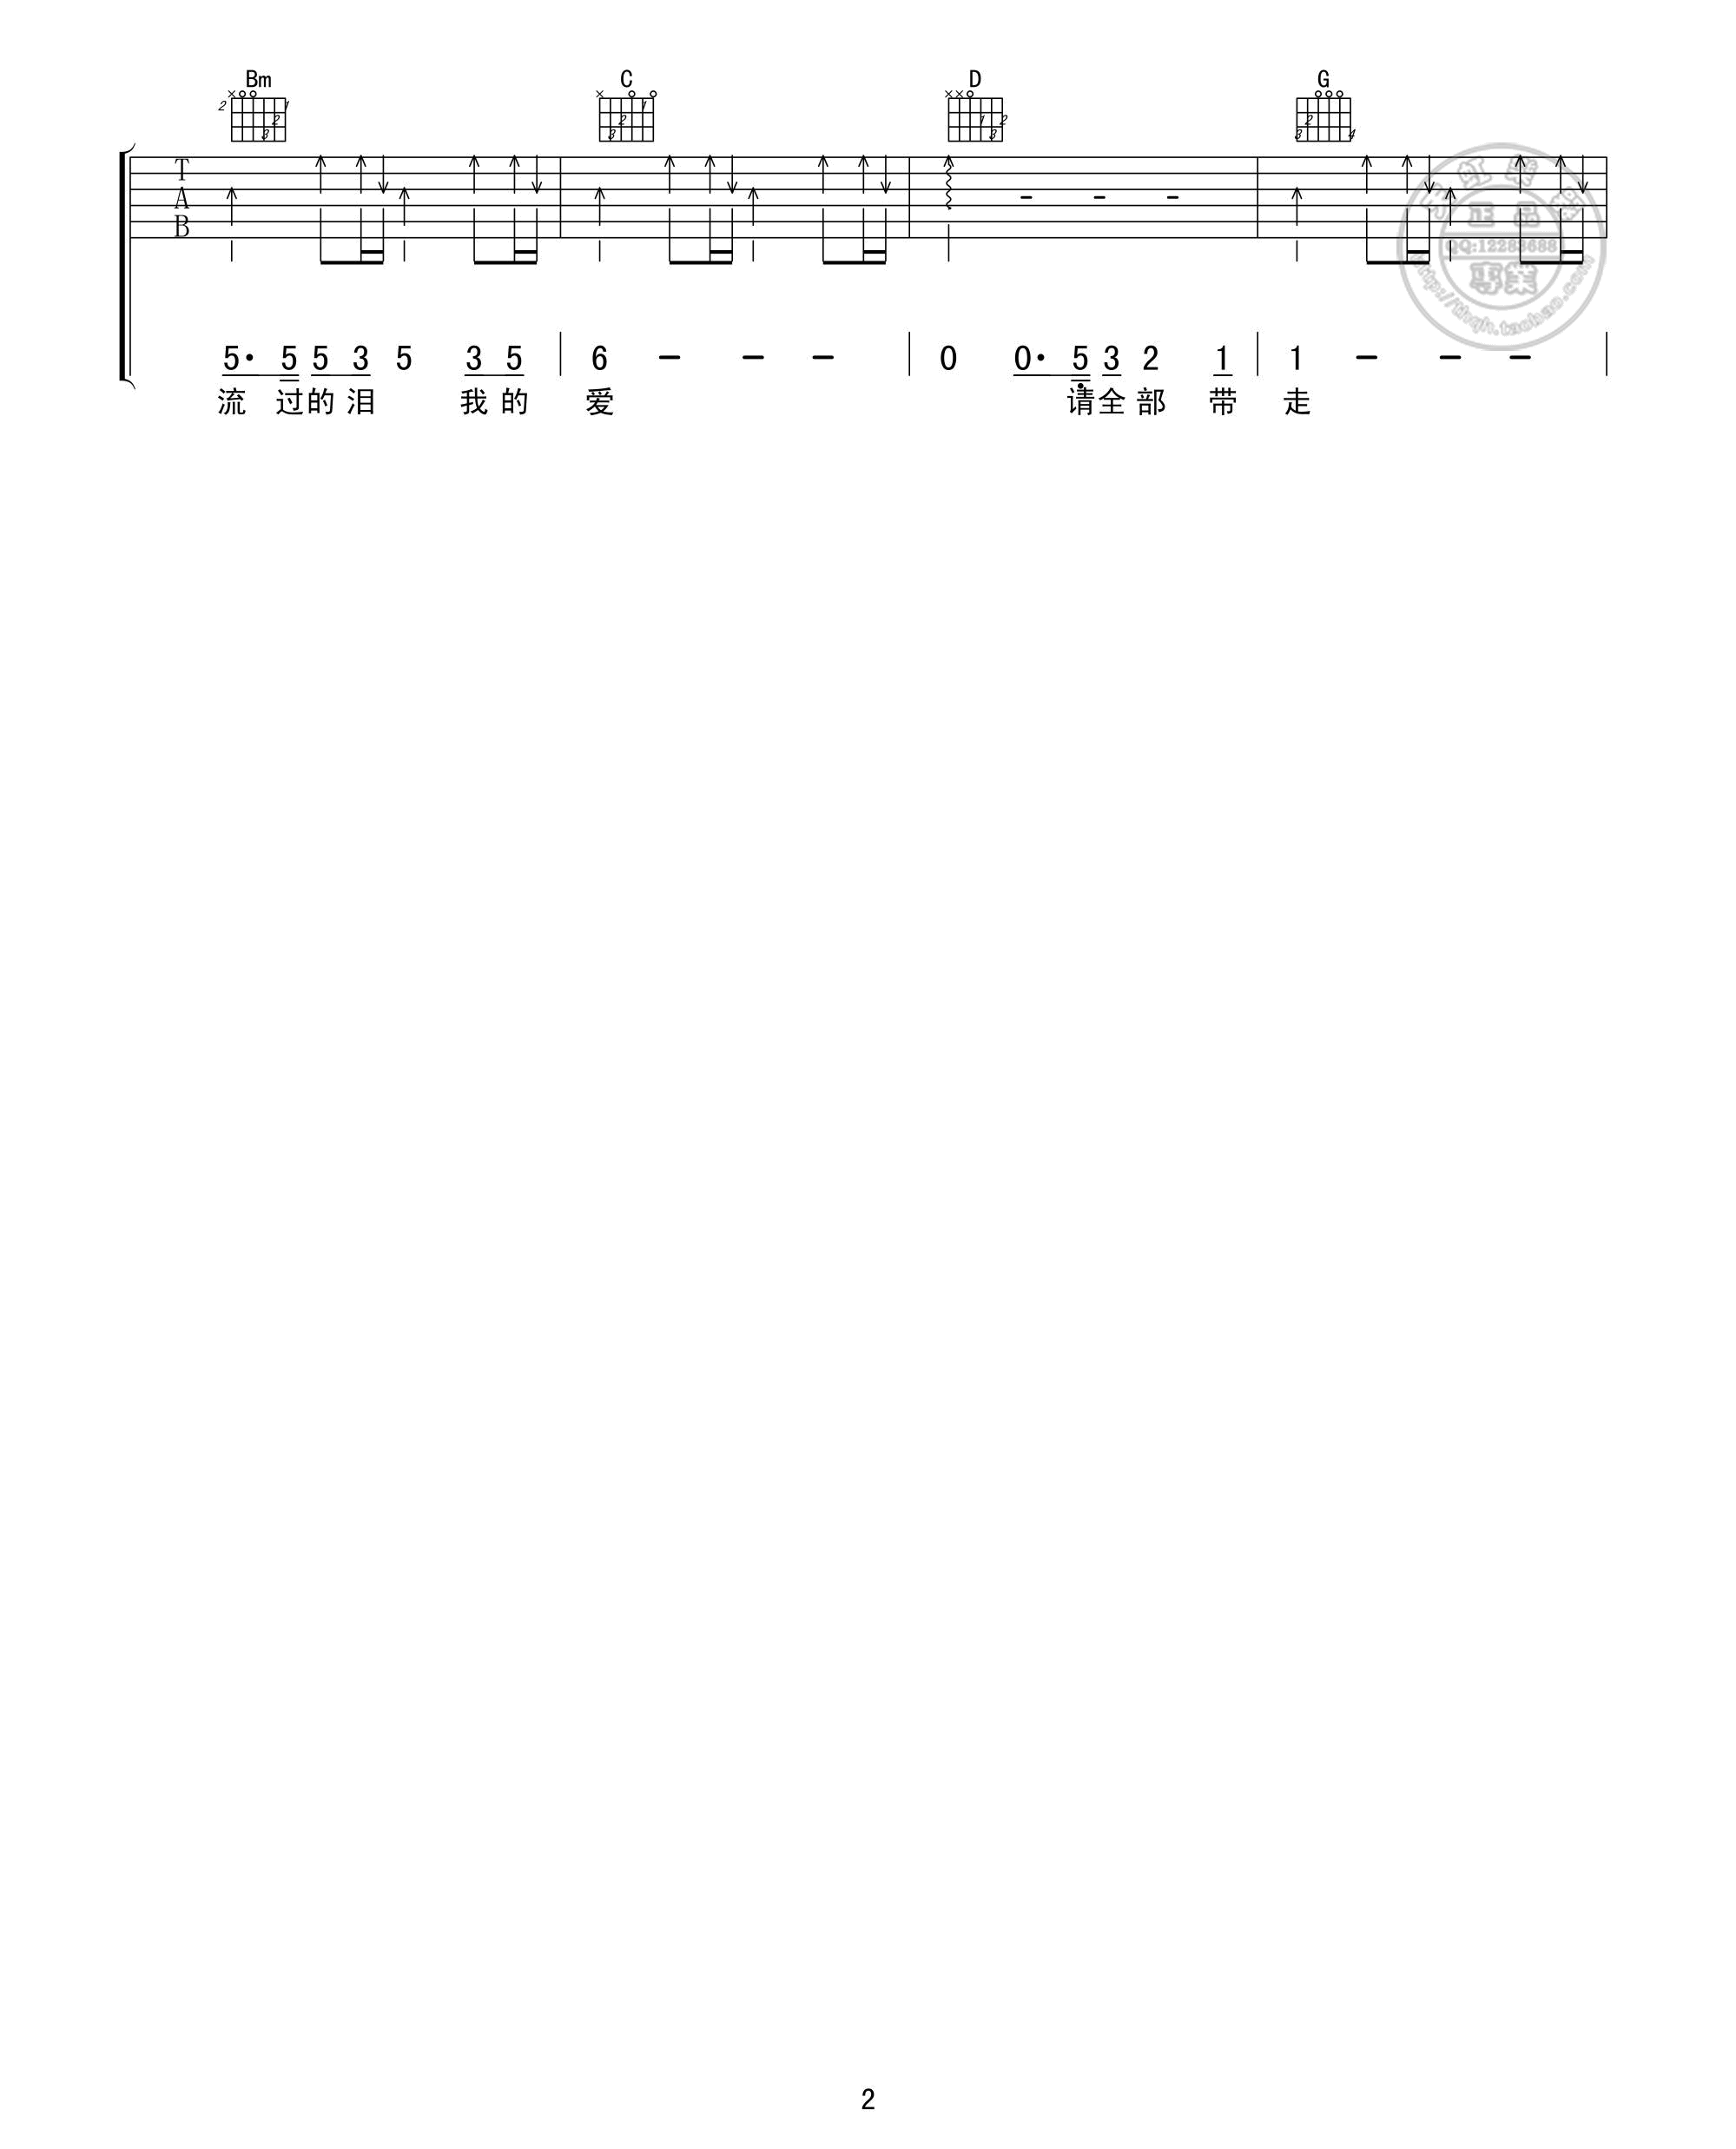 黄霄雲的《星辰大海》谱子带扫弦节奏吉他谱 - E编配 - 变调夹Capo=0 - 中级六线谱 - 易谱库